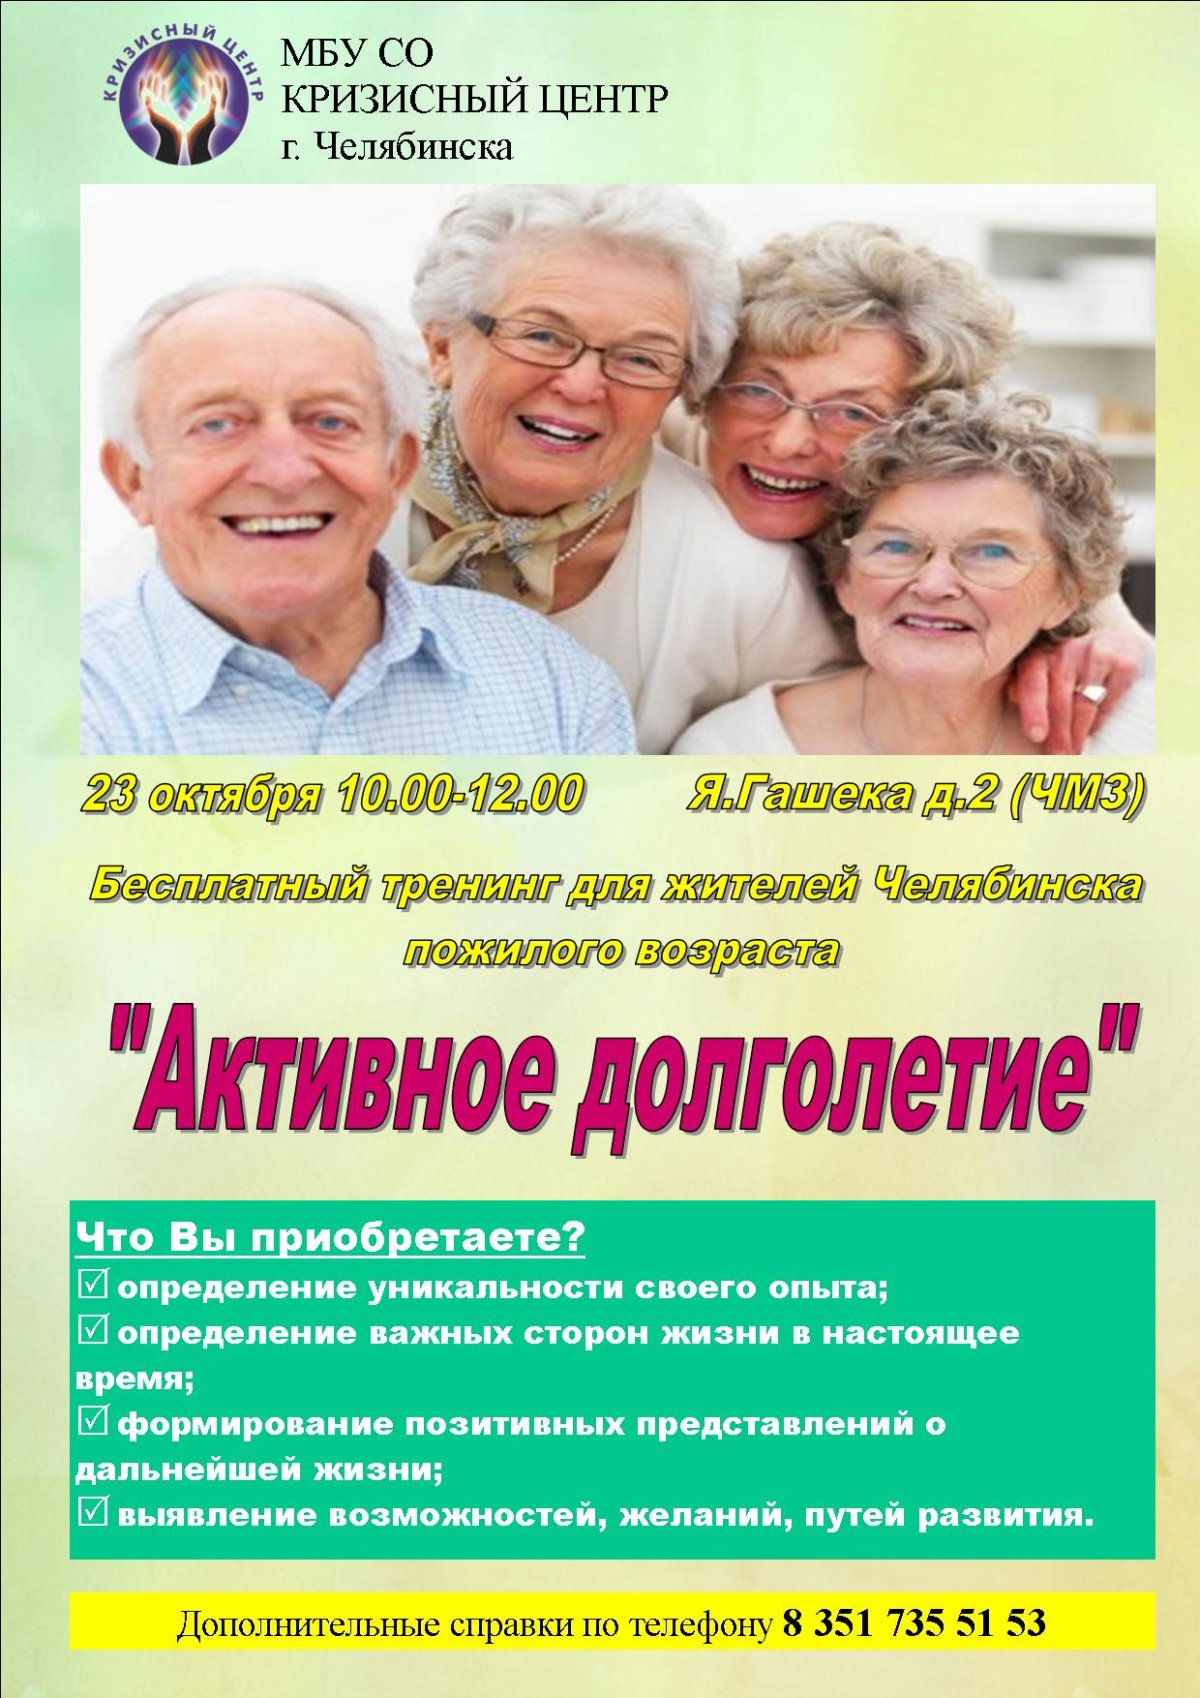 Активное социальное долголетие. Активное долголетие программа. Реклама ко Дню пожилых людей. Приглашение на активное долголетие. Приглашаем в активное долголетие.